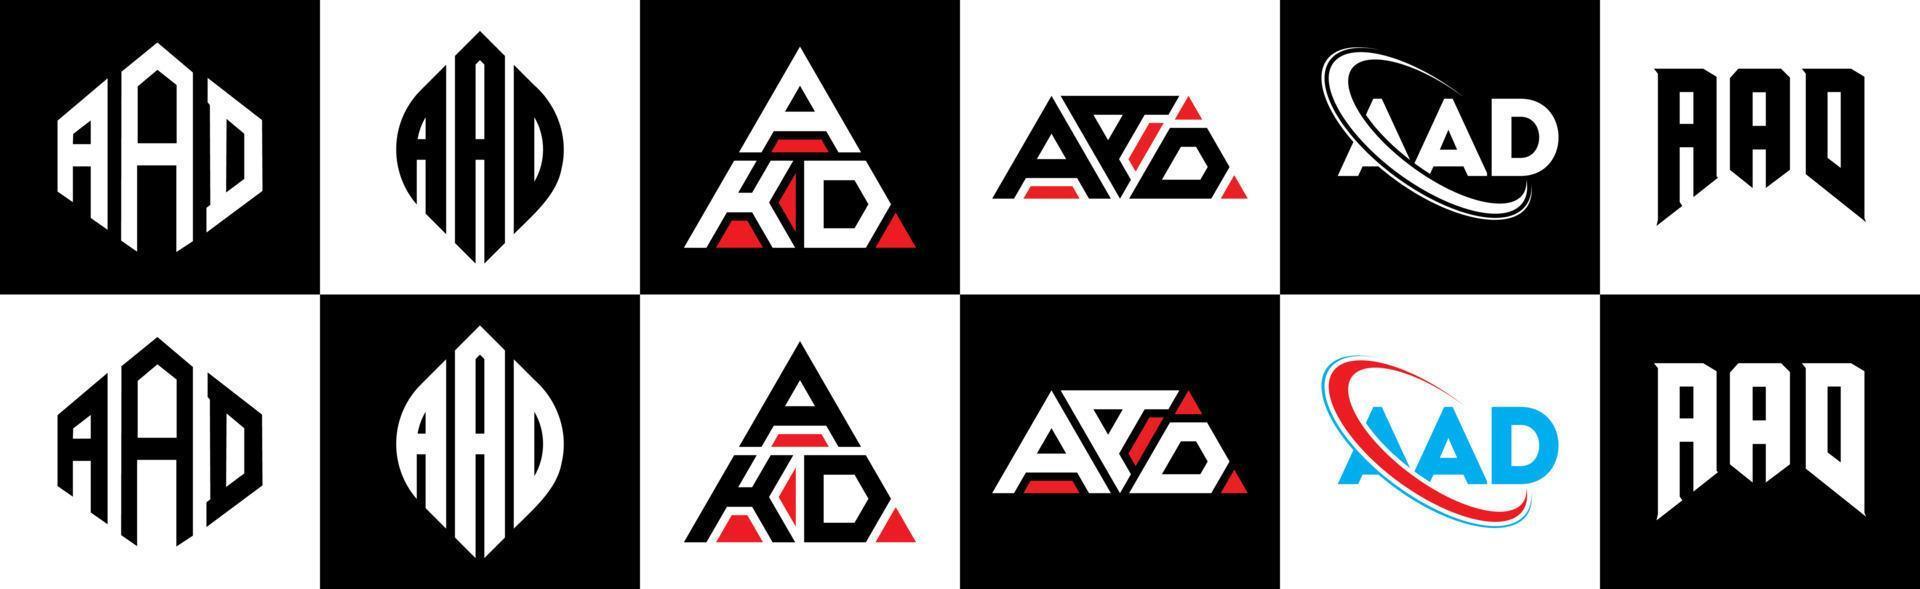 aad lettera logo design nel sei stile. aad poligono, cerchio, triangolo, esagono, piatto e semplice stile con nero e bianca colore variazione lettera logo impostato nel uno tavola da disegno. aad minimalista e classico logo vettore